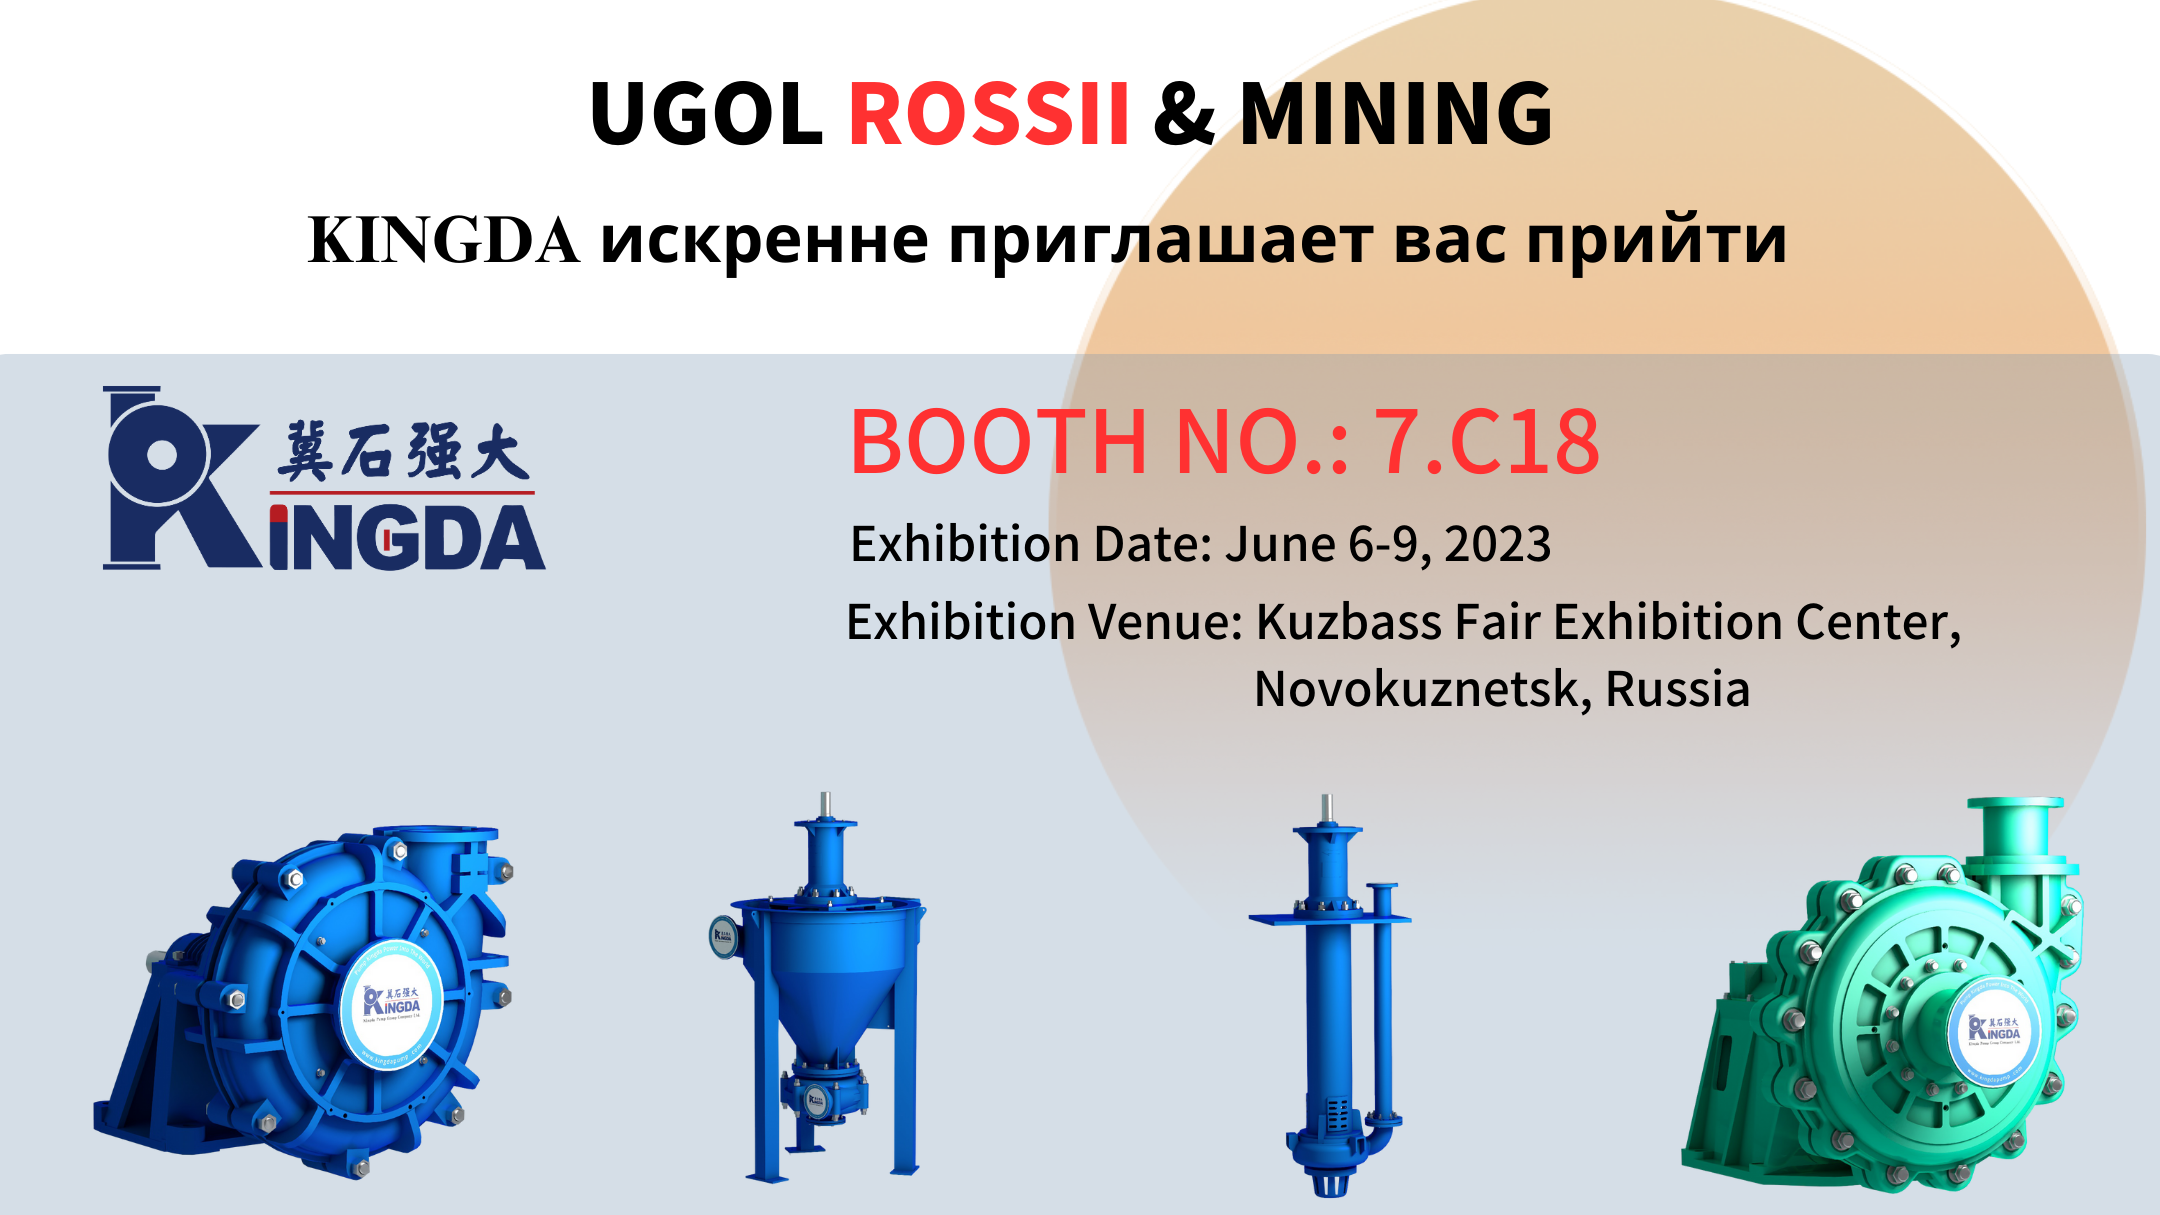 強大(dà)泵業受邀第 31 屆俄羅斯新庫國際礦業展覽會